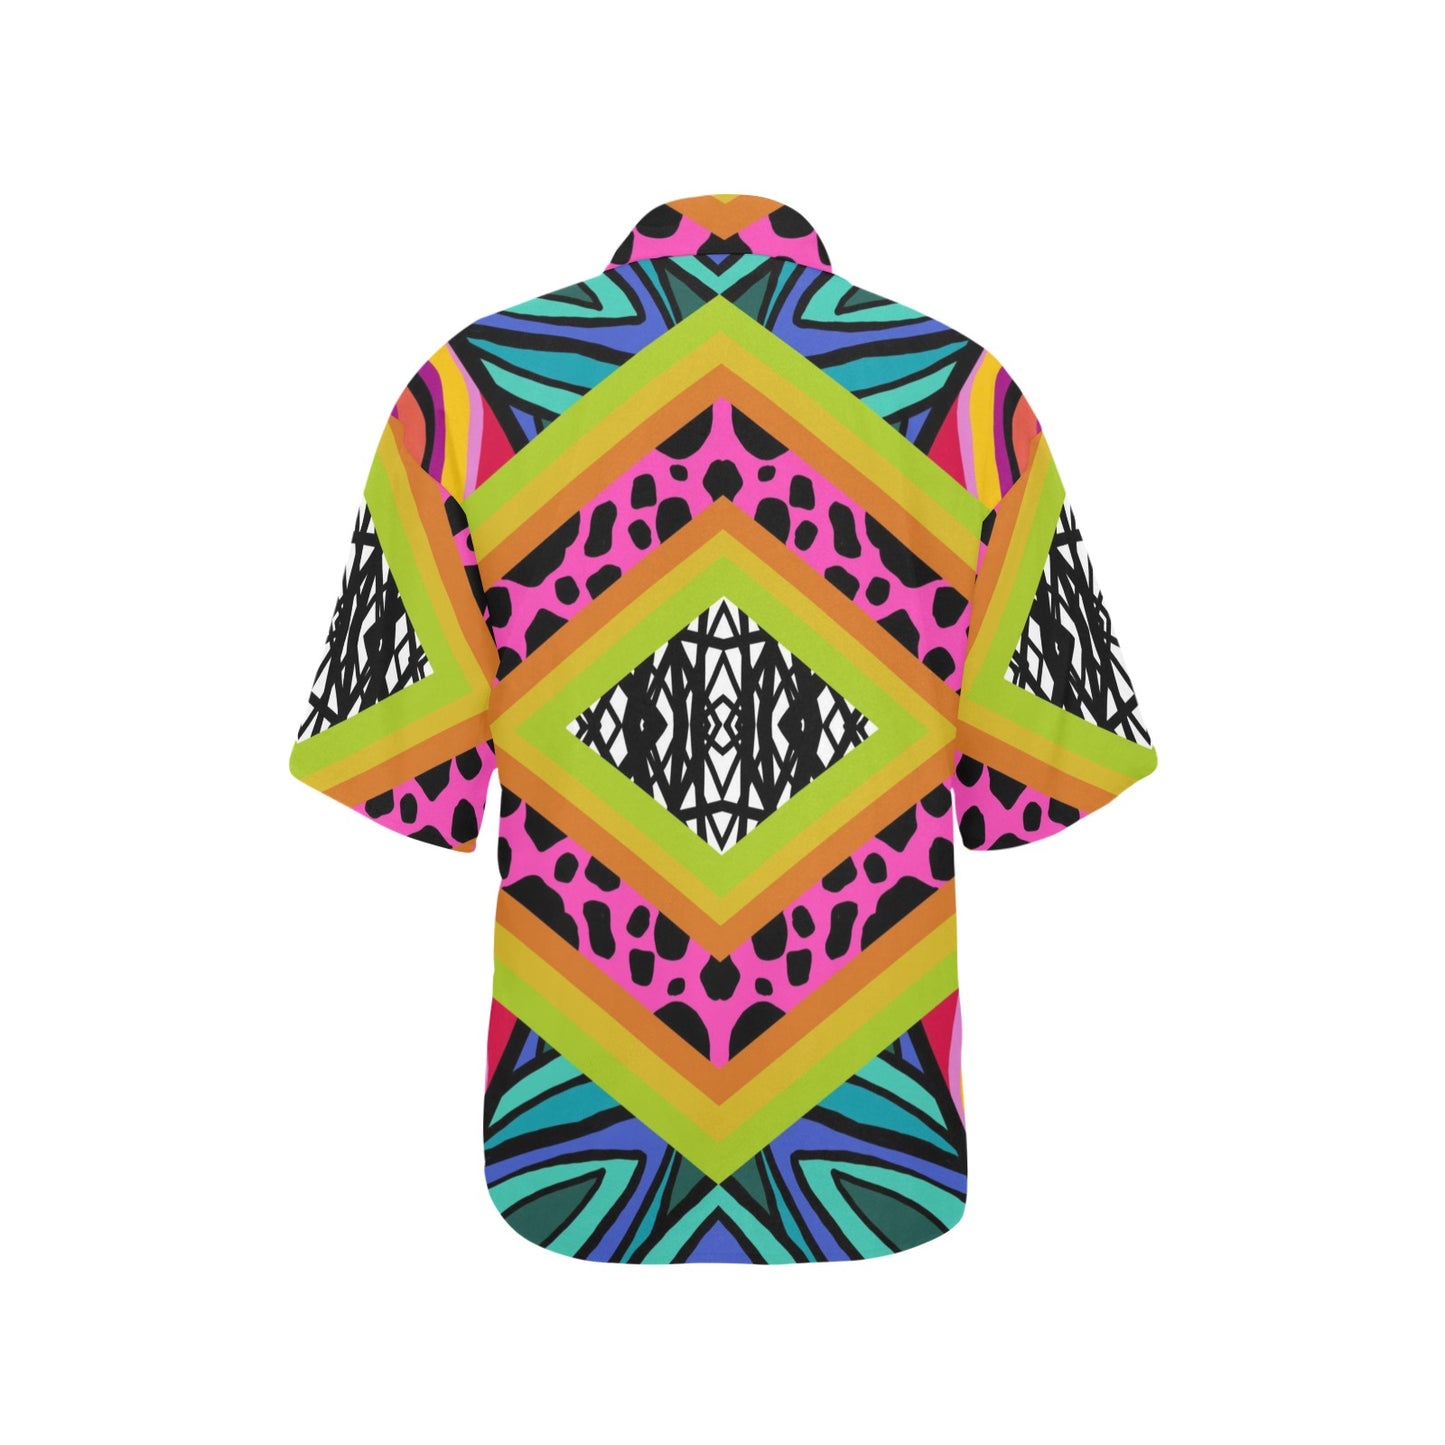 Dalma- Women's Hawaiian shirt